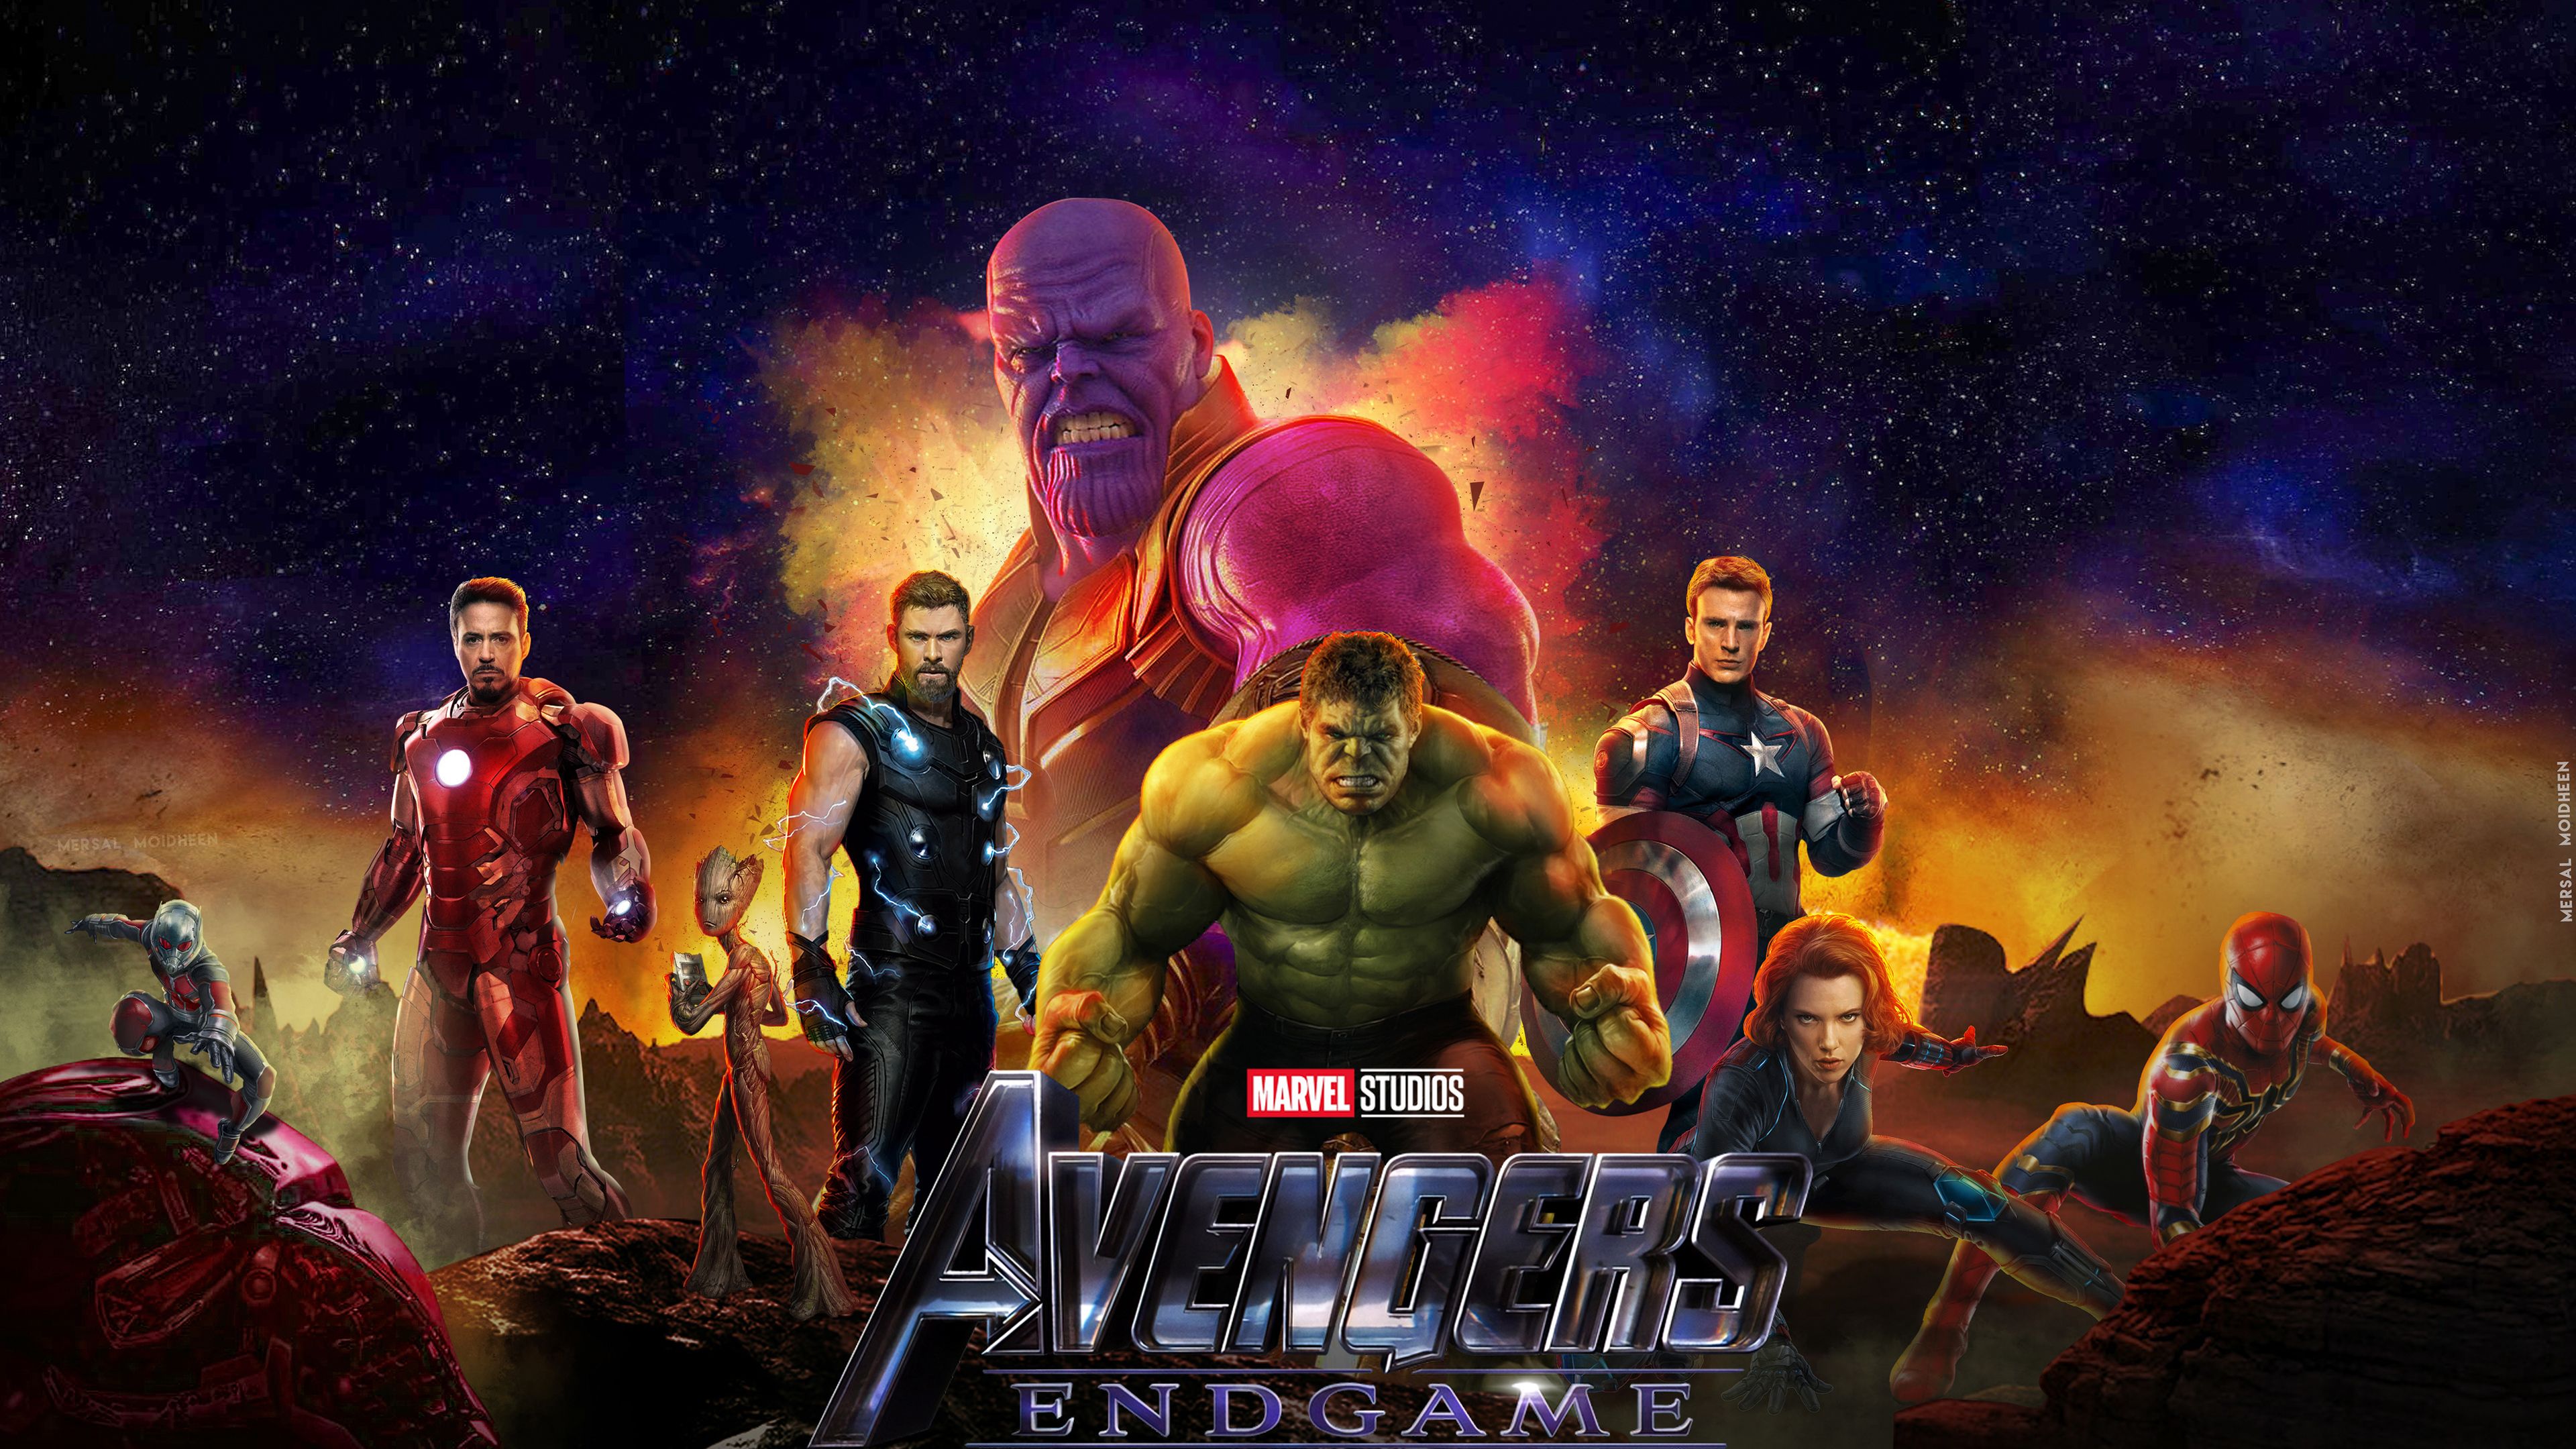 Wallpaper 4k 2019 Avengers Endgame New 4k 2019 movies wallpaper